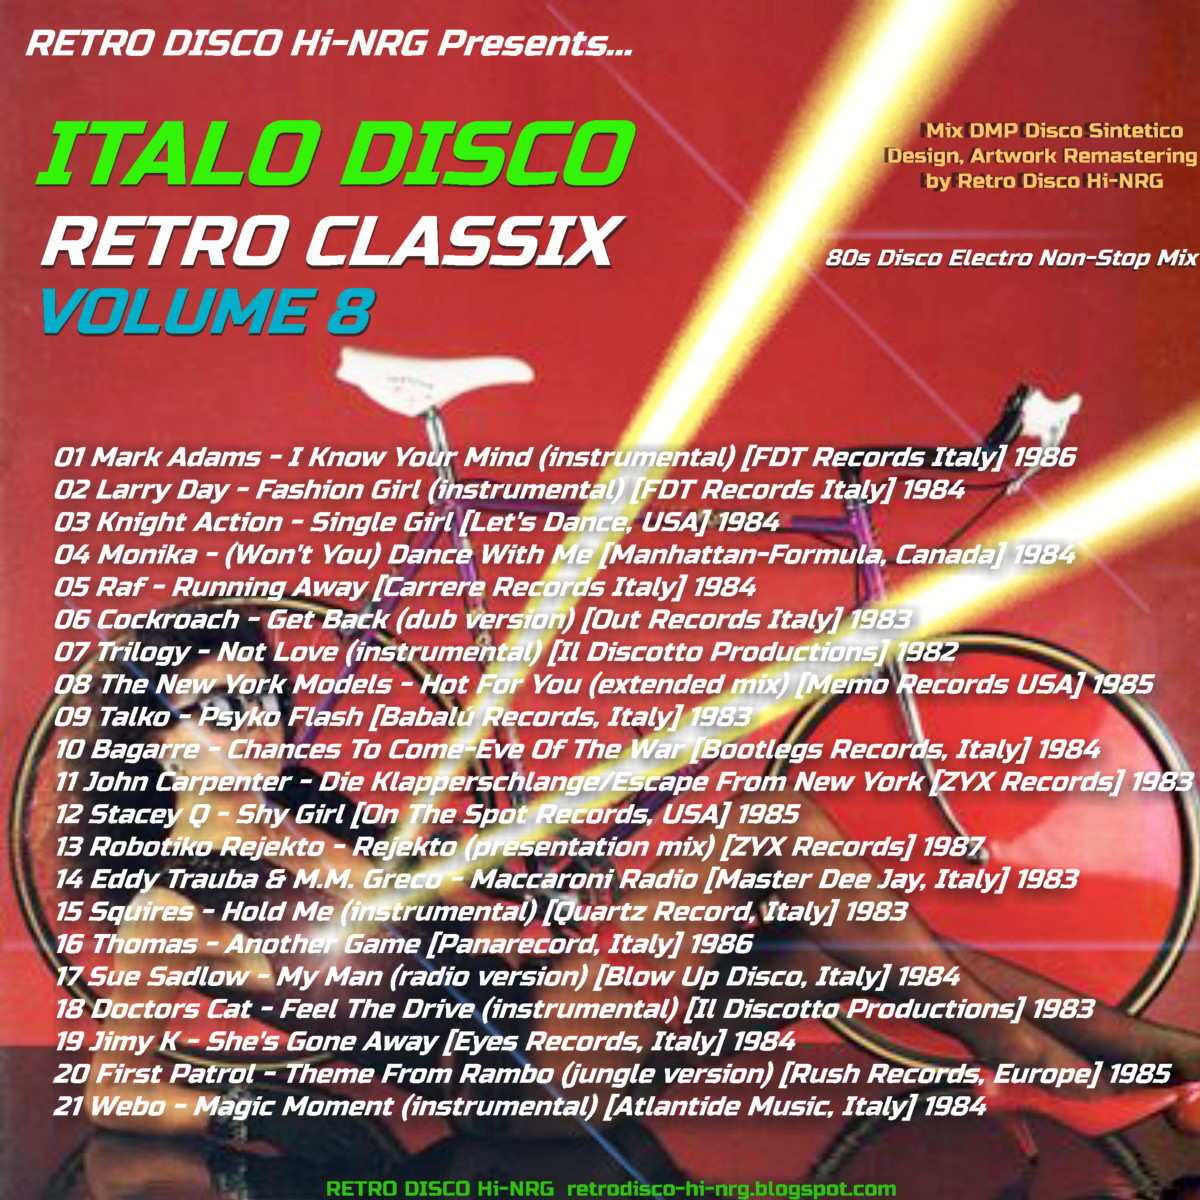 RETRO DISCO HI-NRG: ITALO DISCO RETRO CLASSIX VOL.8 (Non-Stop 80s Hits ...